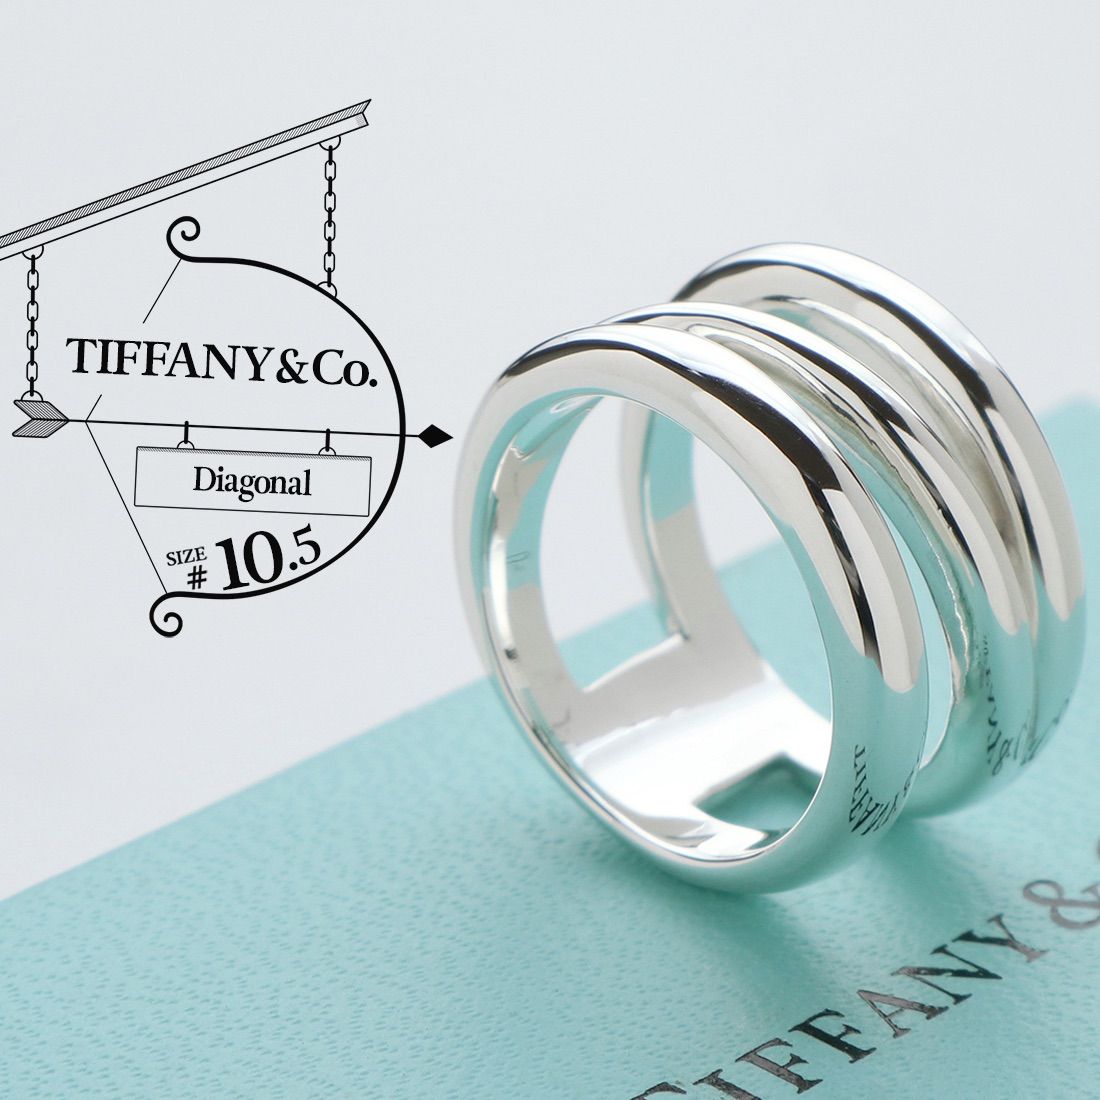 美品 TIFFANY&Co. ティファニー ダイアゴナル リング 10.5号 90’s ヴィンテージ スパイラル ワイド スターリング シルバー AG  925 指輪